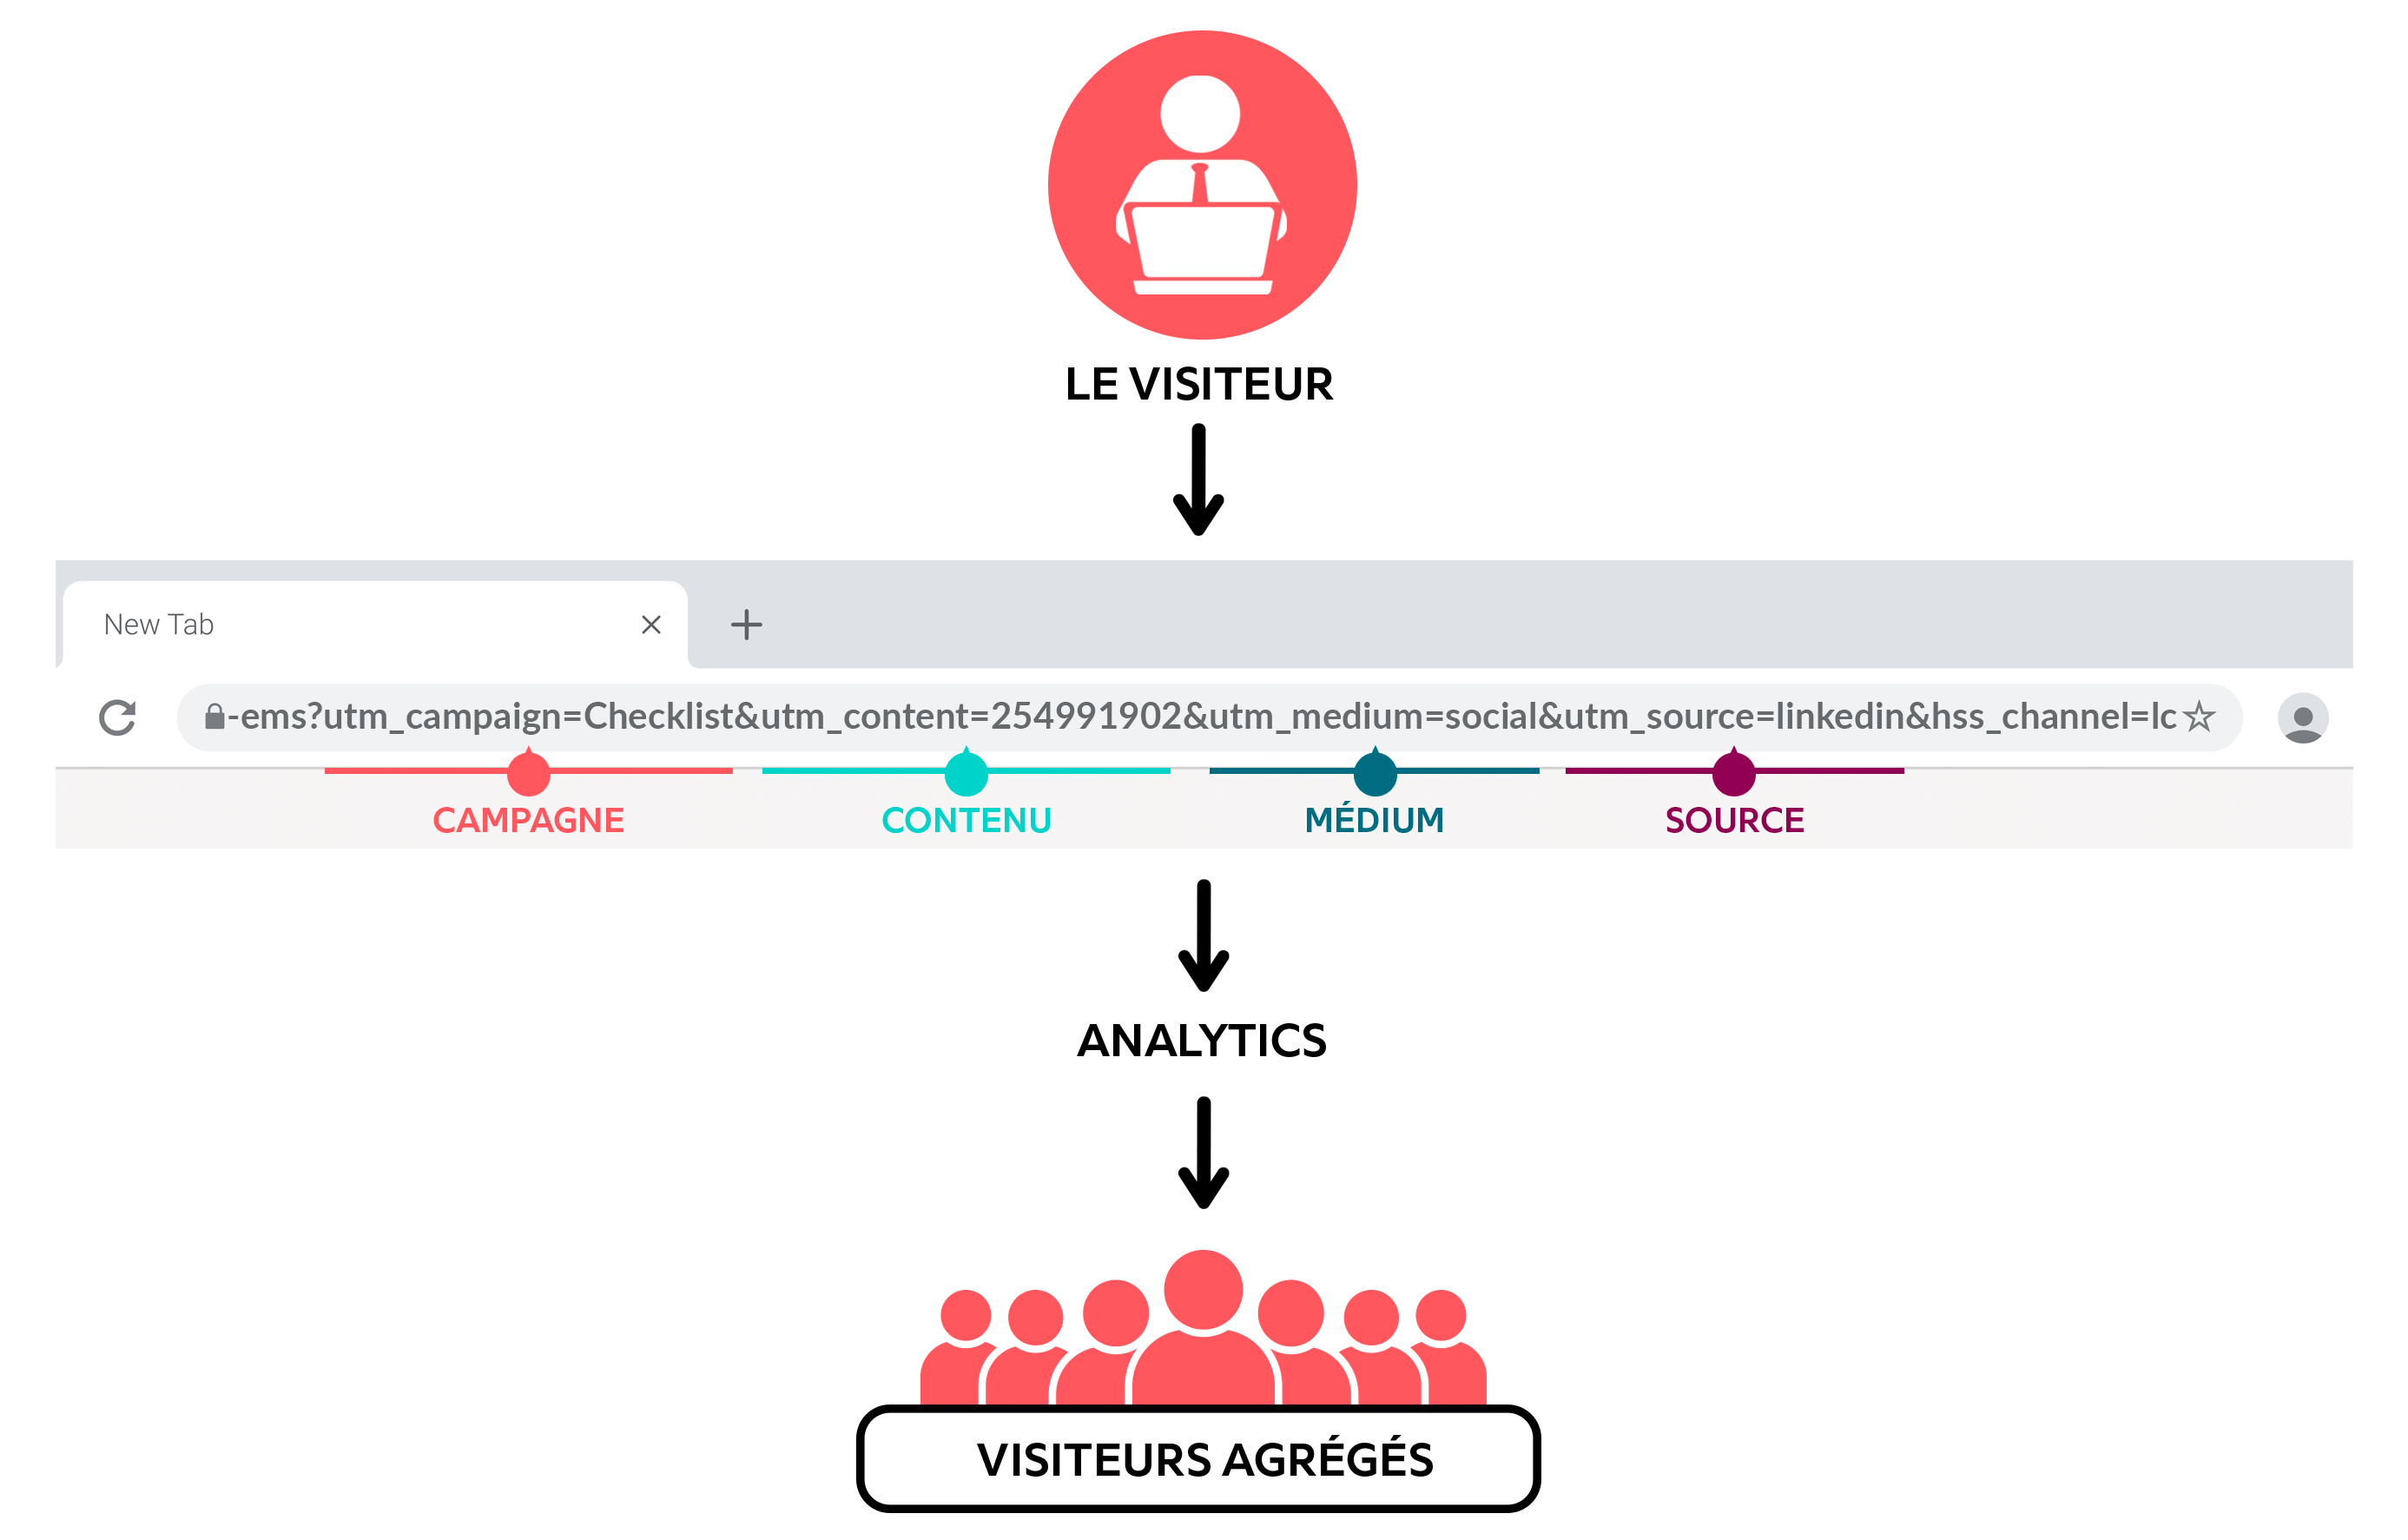 Article Eventdrive : Ce visuel permet de comprendre comment fonctionne les UTM. Il montre tout le parcours utilisateur, lorsque le visiteur clic sur le lien UTM, les données remontent dans les analytics puis le visiteur rejoint la liste des visiteurs agrégés.